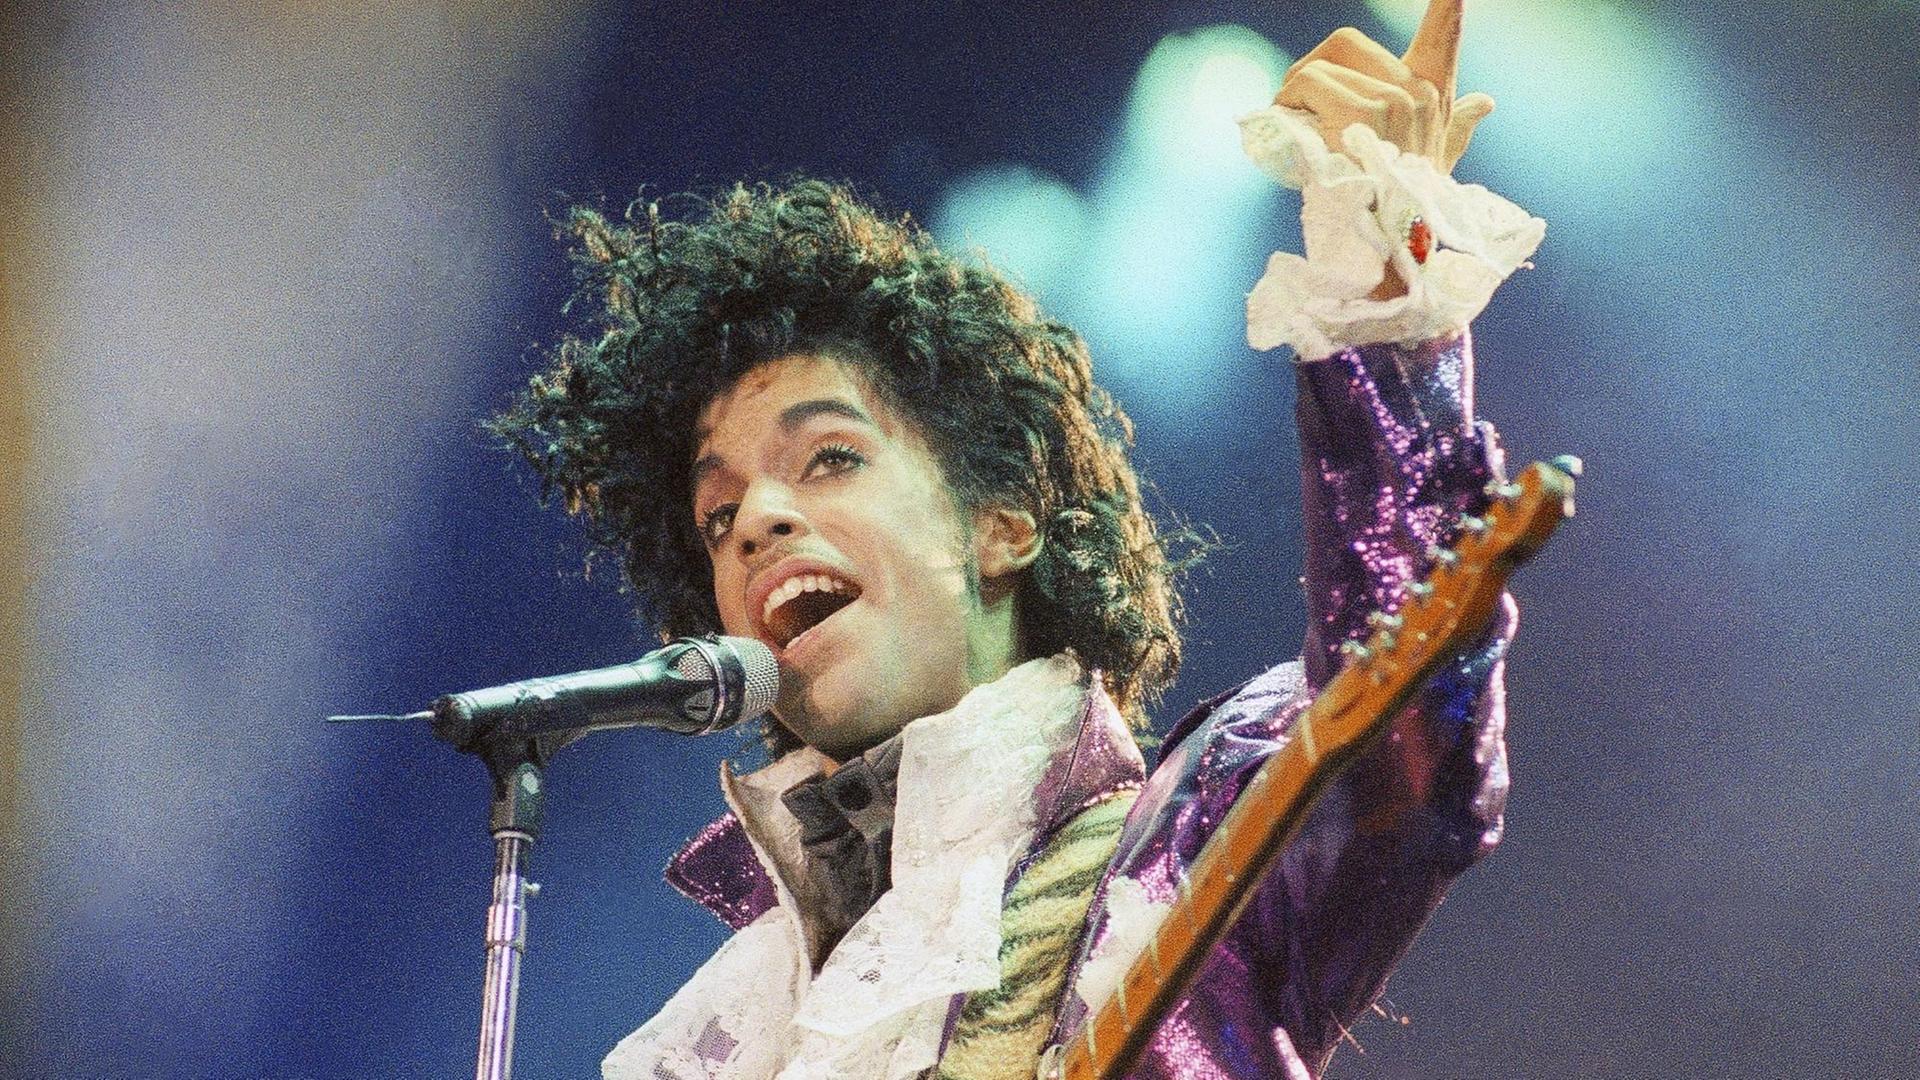 Prince sang am 18.02.1985 in der Konzerthalle "Forum" im californischen Inglewood (USA).